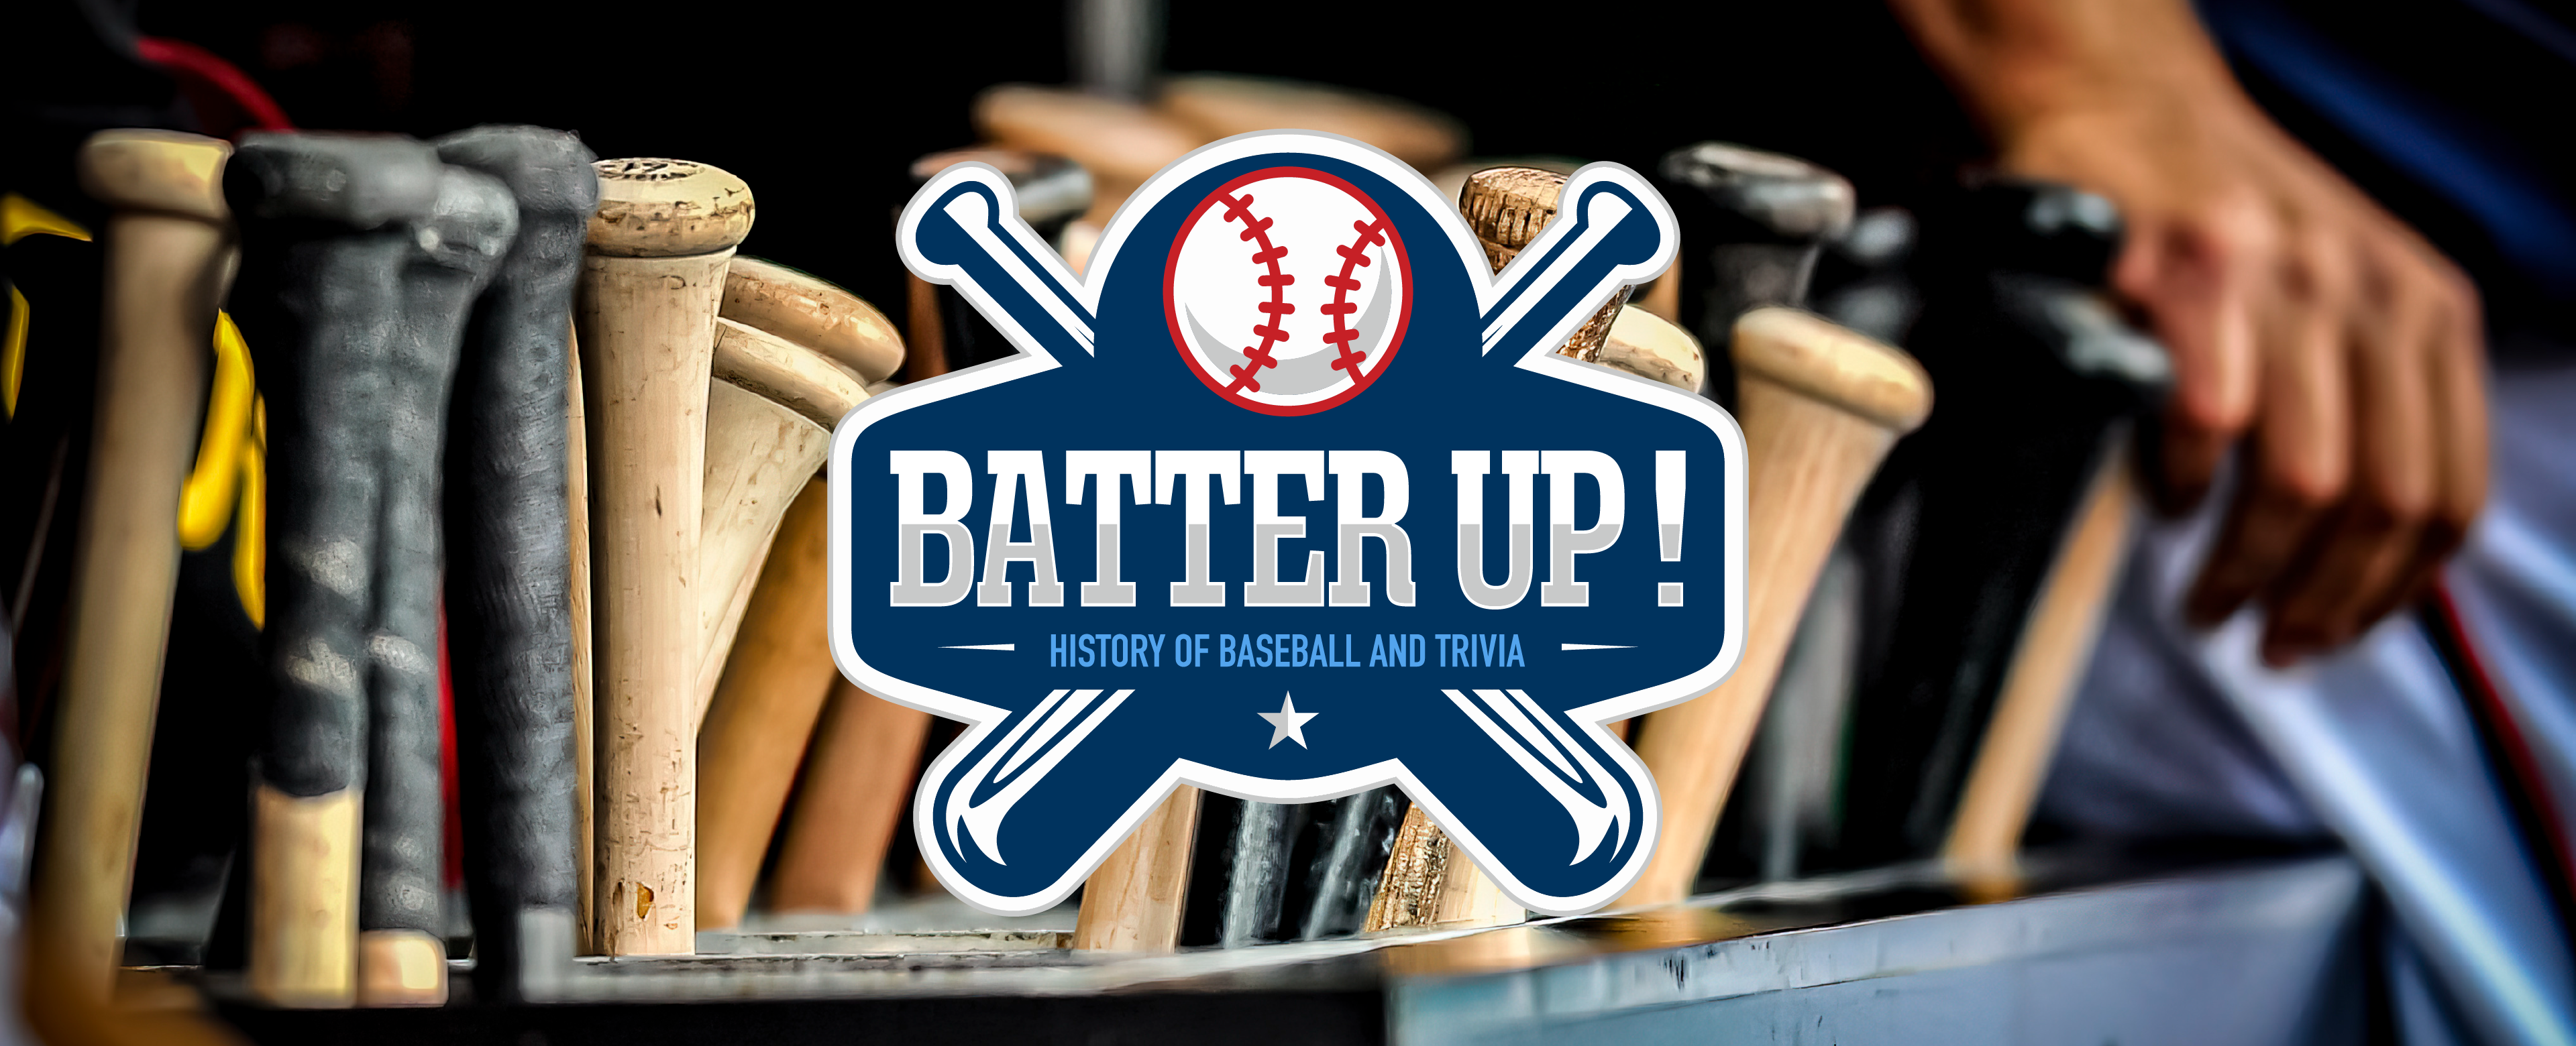 Batter Up! History of Baseball and Trivia